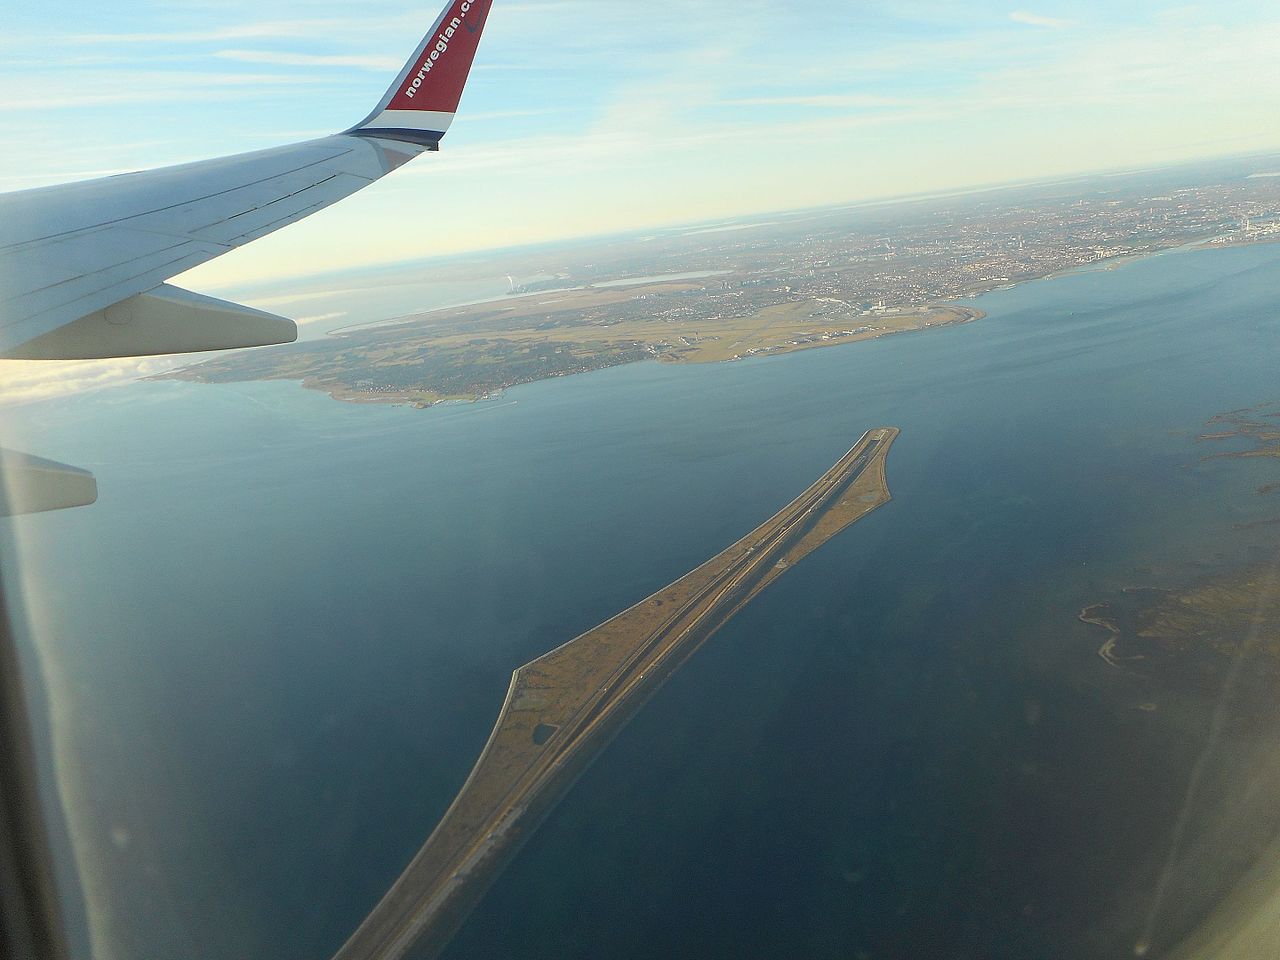 Вид на Эресуннский мост и остров Пеберхольм с пассажирского самолета. Источник https://upload.wikimedia.org/